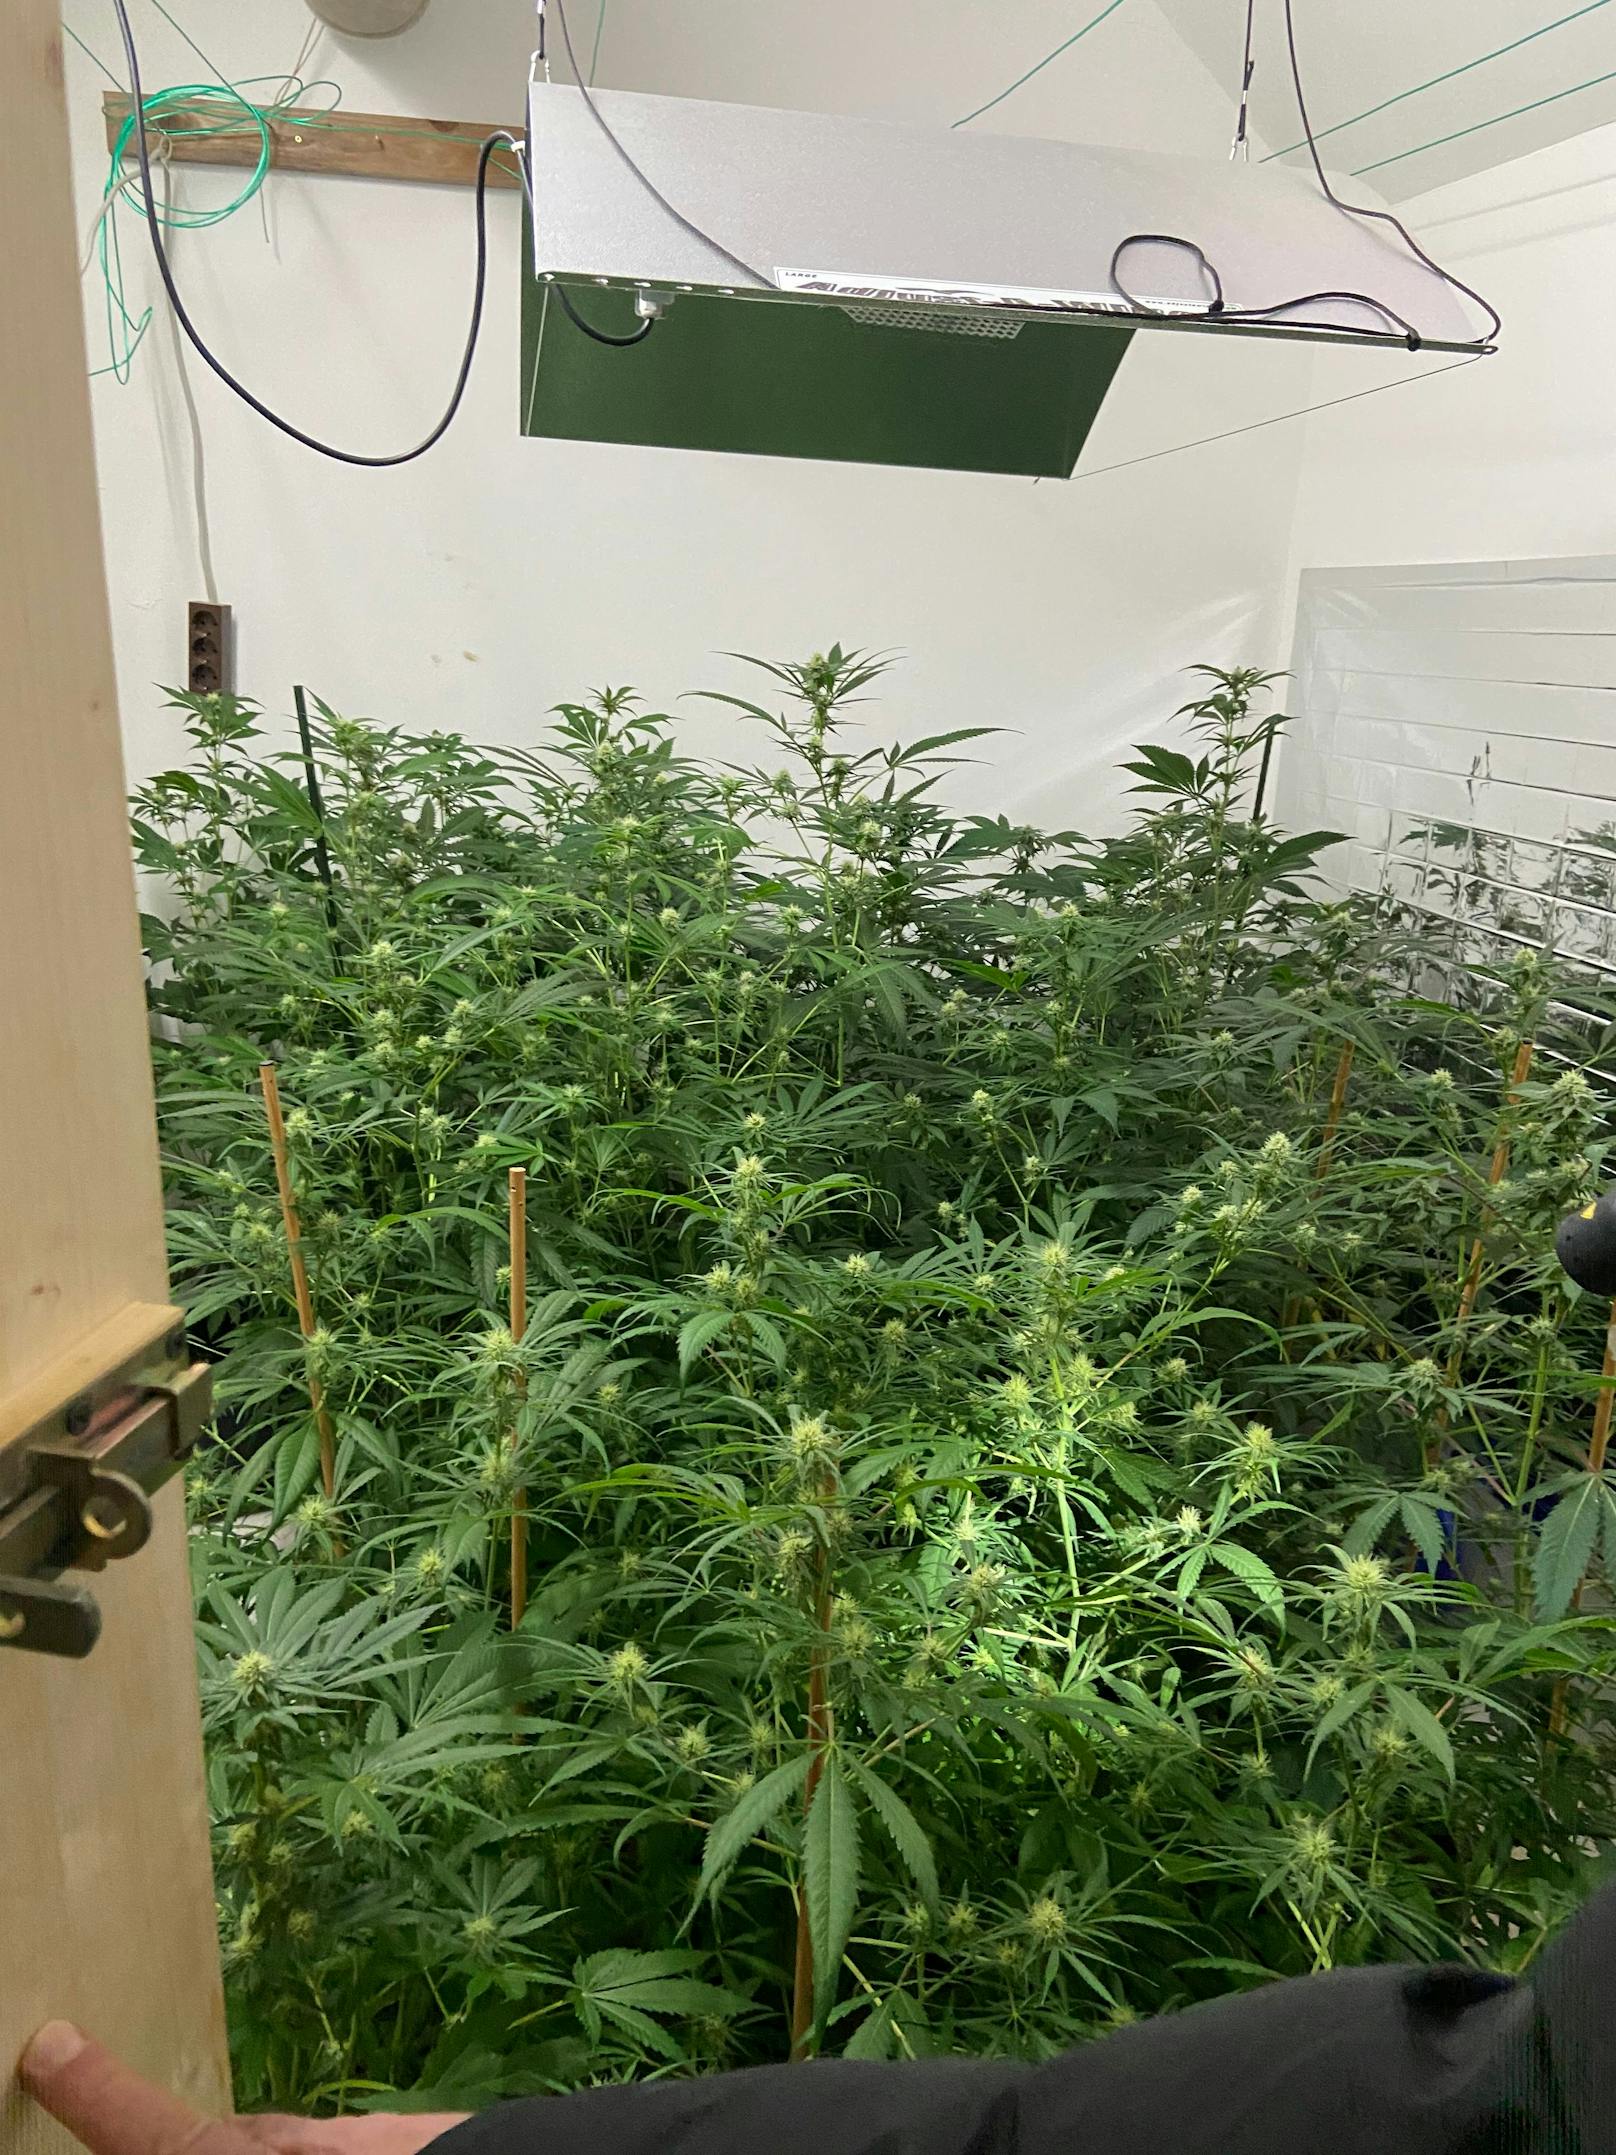 Bei der Hausdurchsuchung wurde unter anderem eine Indoorplantage mit 30 Cannabispflanzen entdeckt.